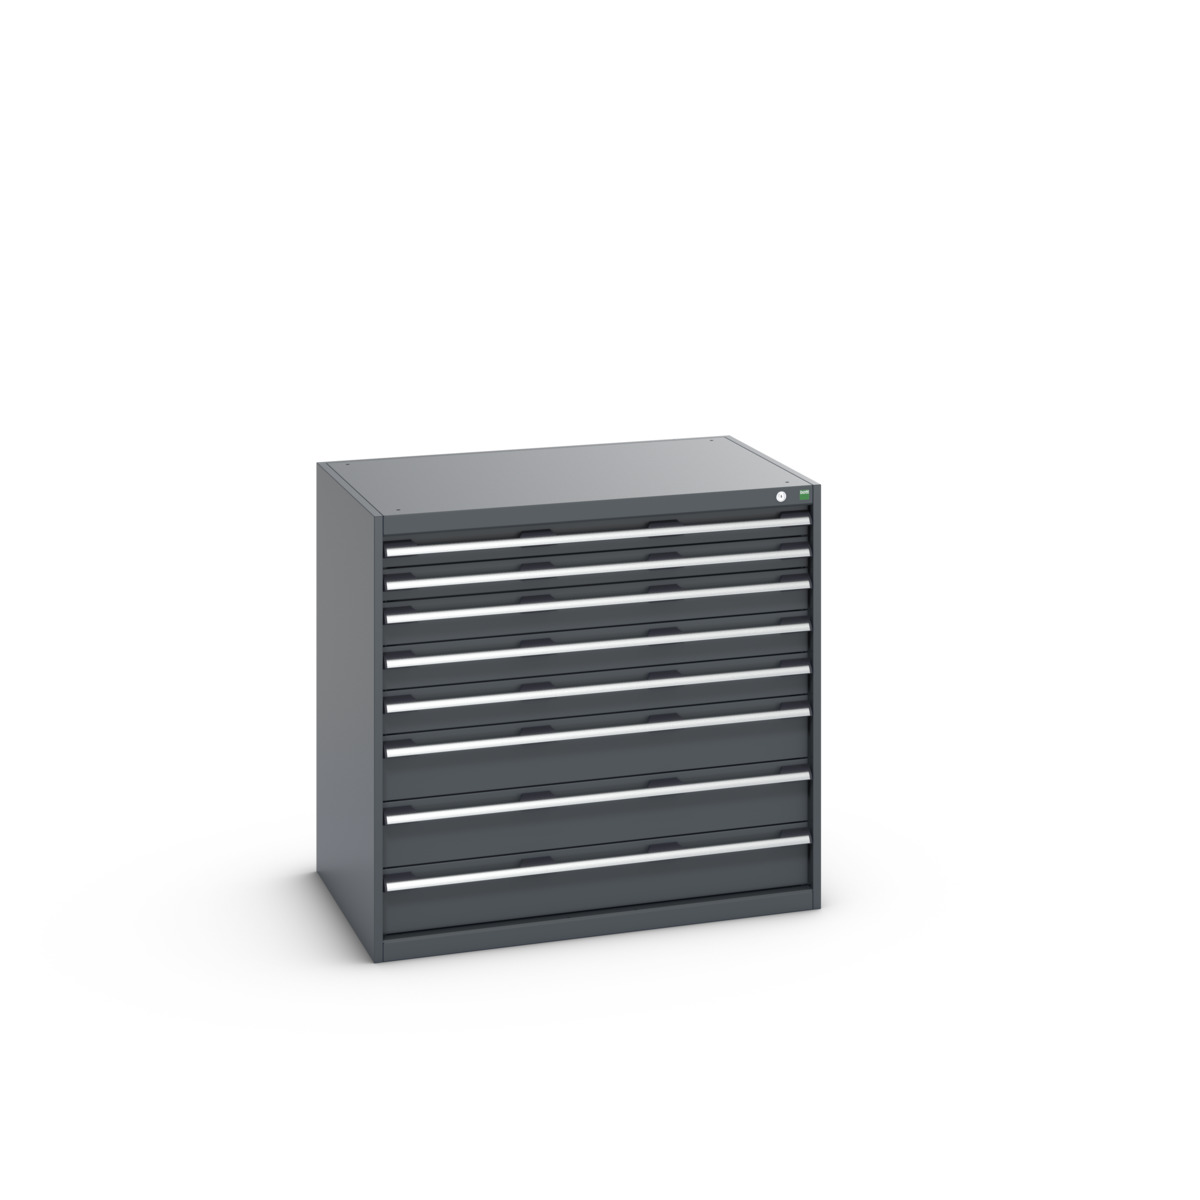 40029026.77V - cubio drawer cabinet